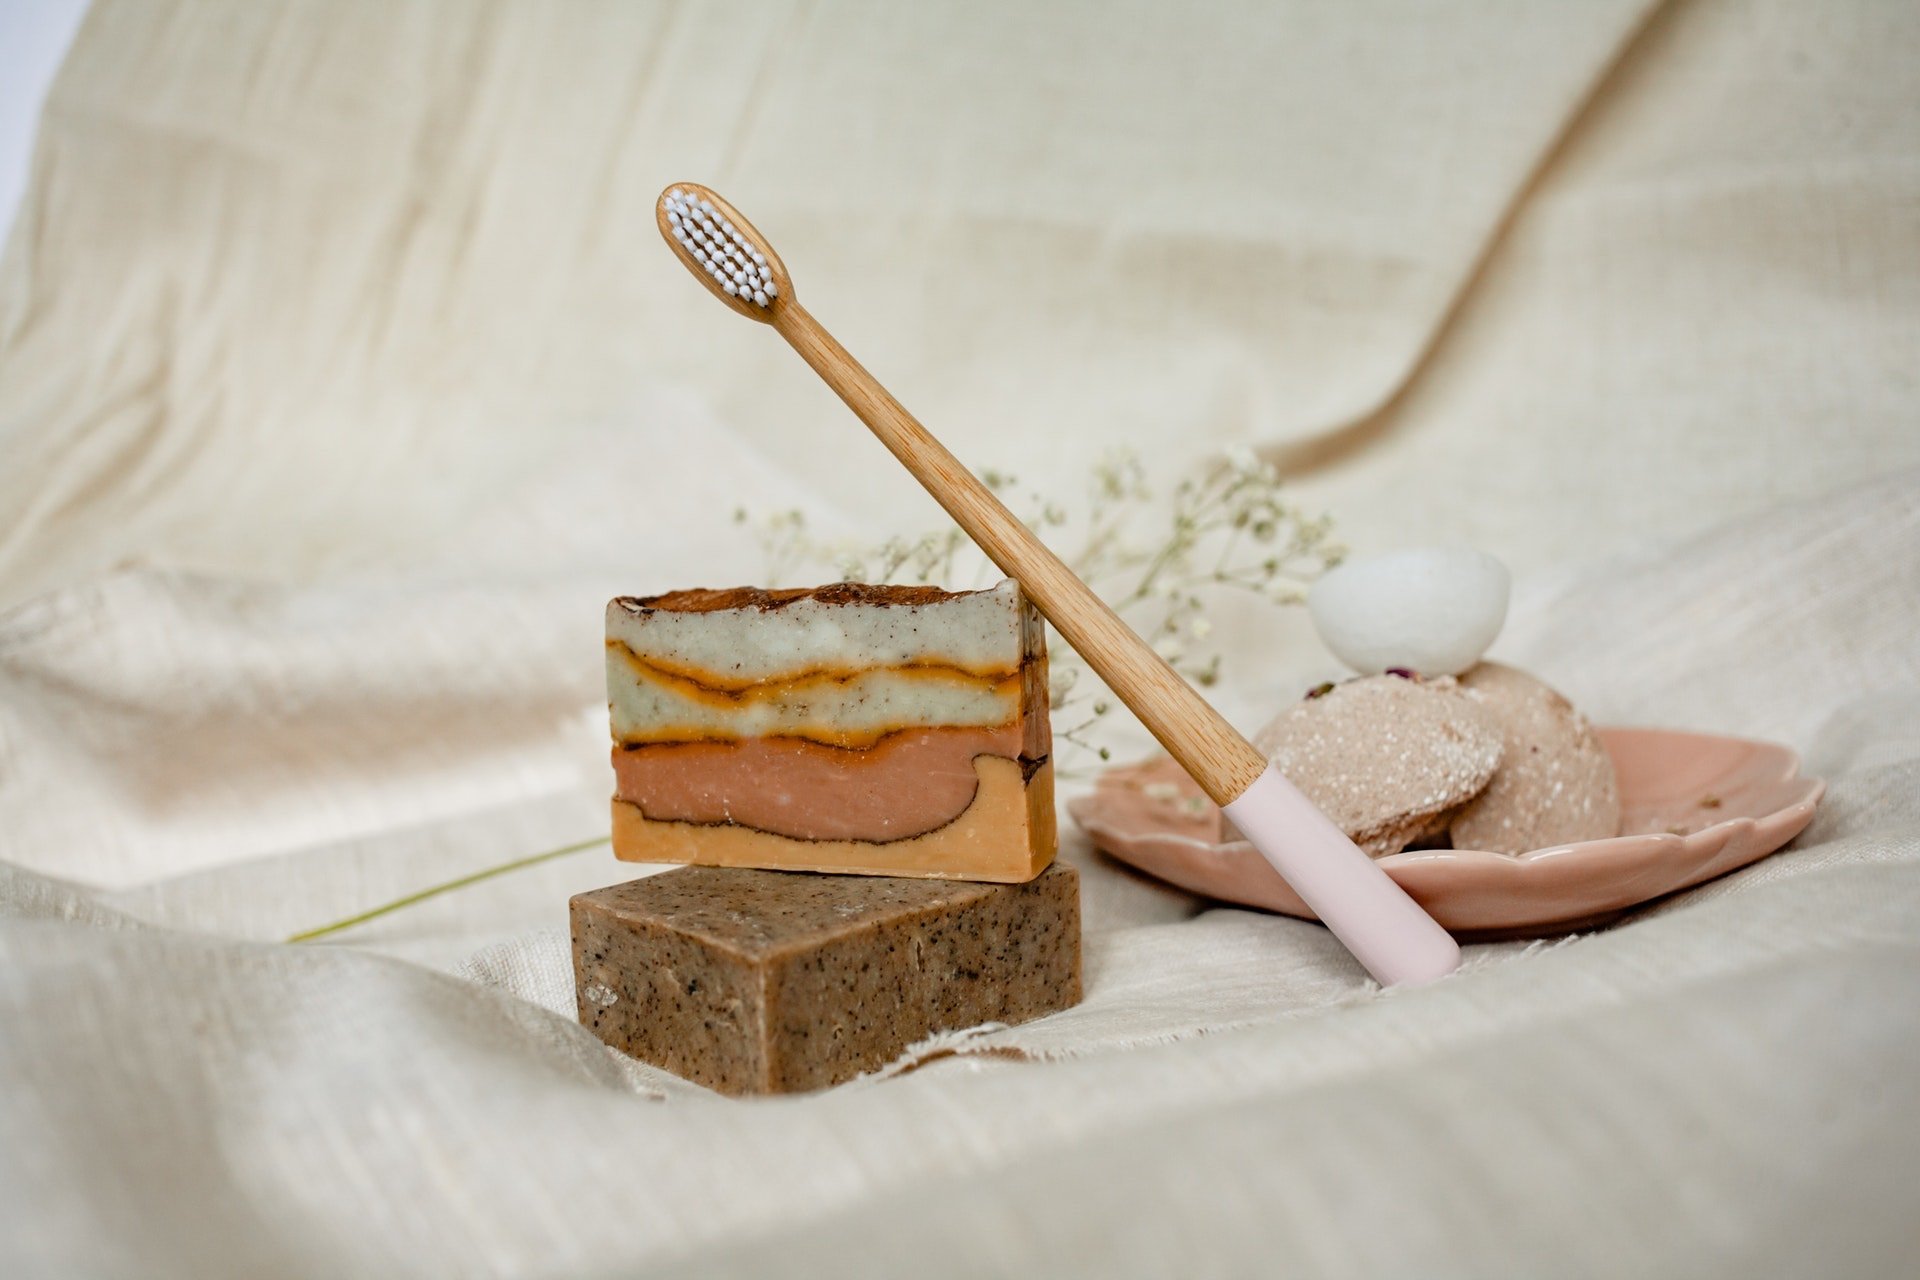 cepillo dental de bambú sostenible con jabones artesanales de color marrón sobre una tela color beige; negocios sostenibles